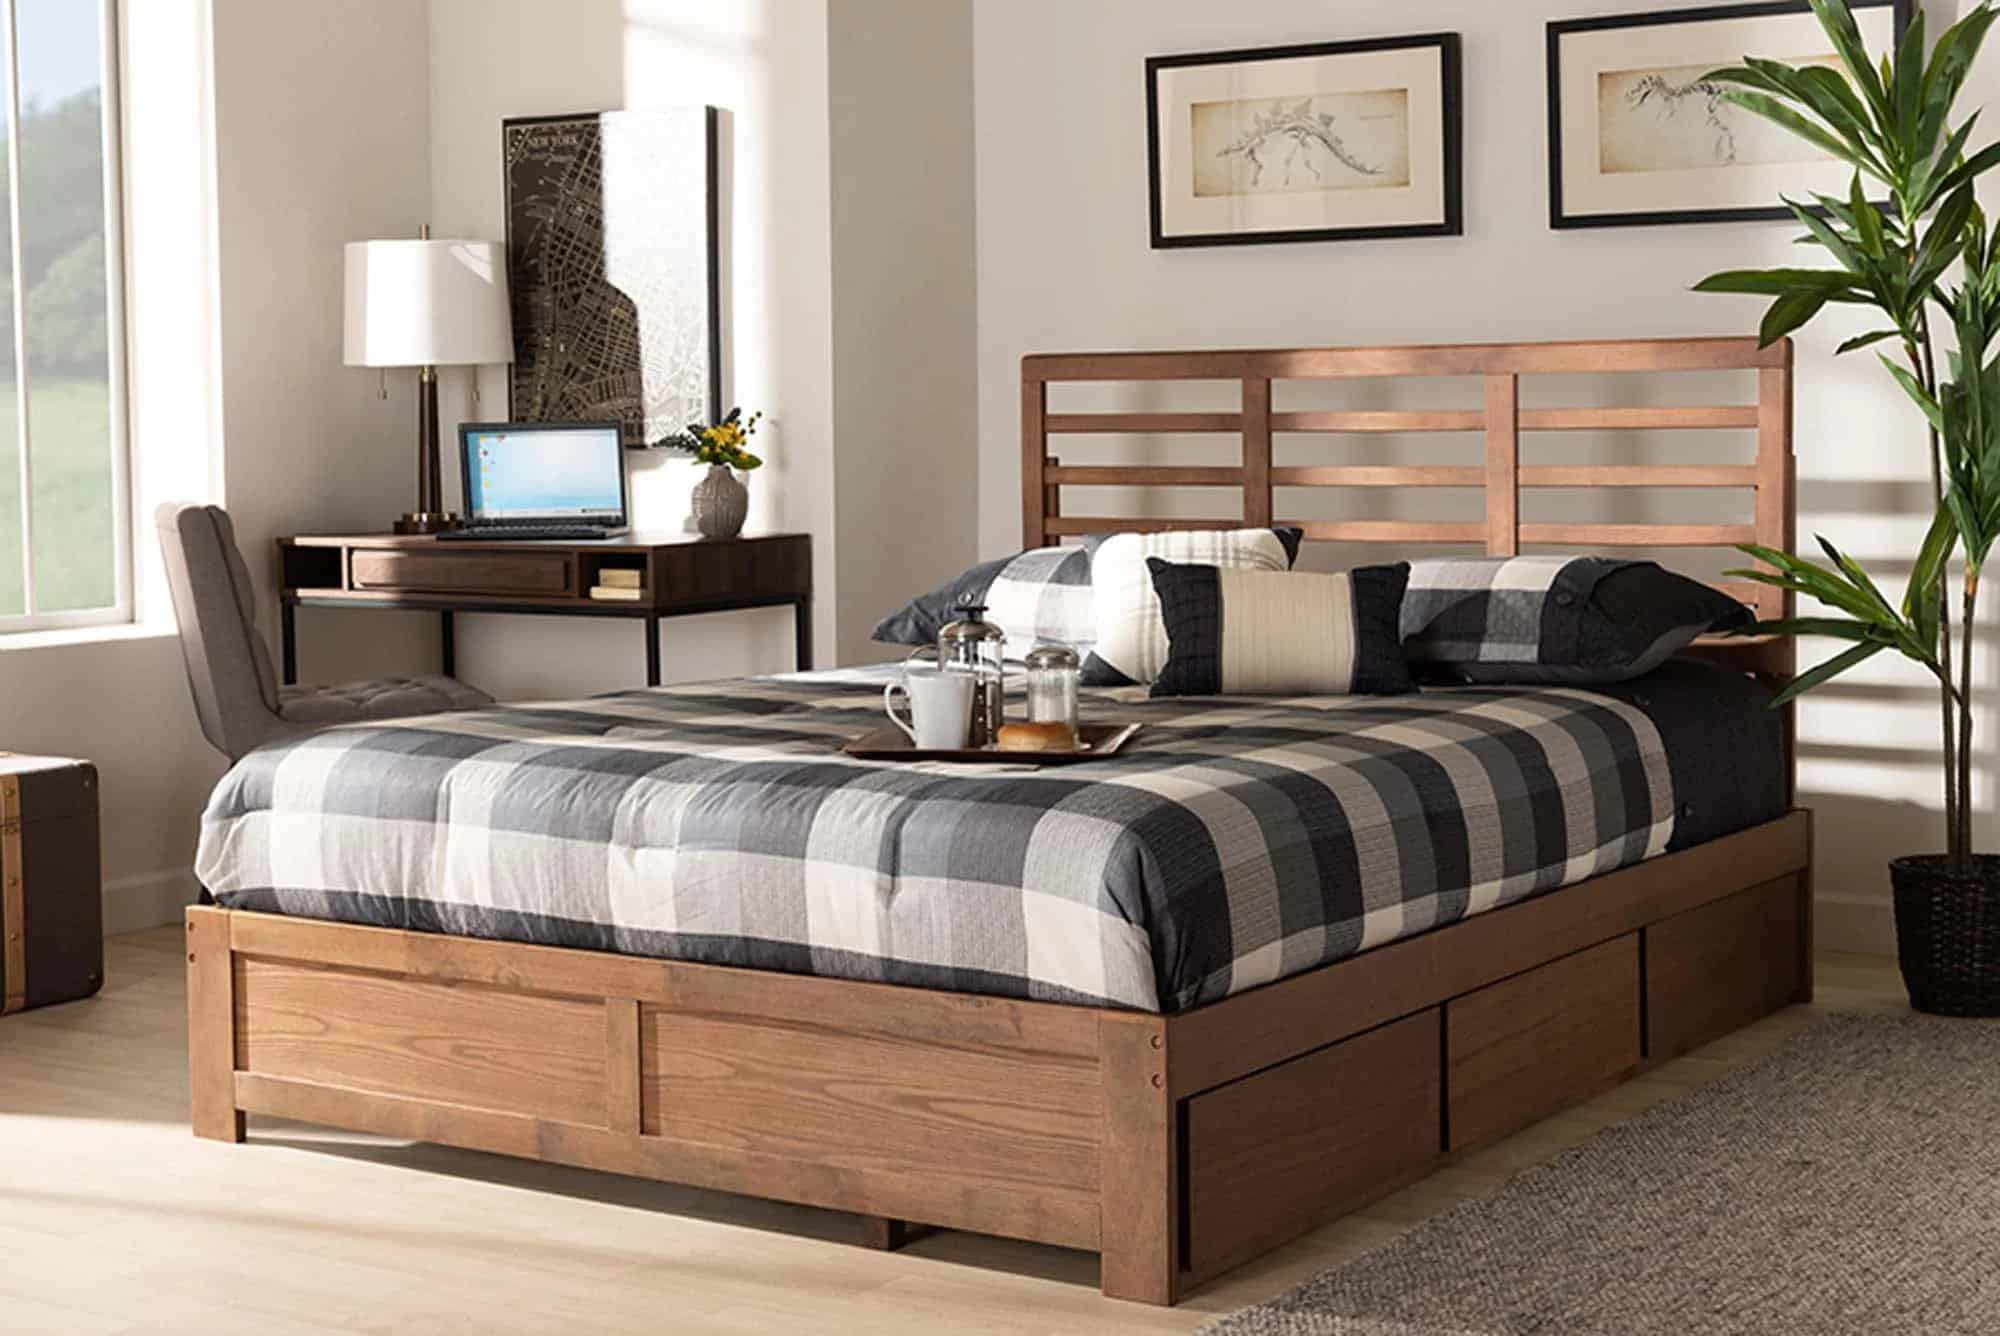 Giường ngủ có ngăn kéo làm từ gỗ tự nhiên an toàn